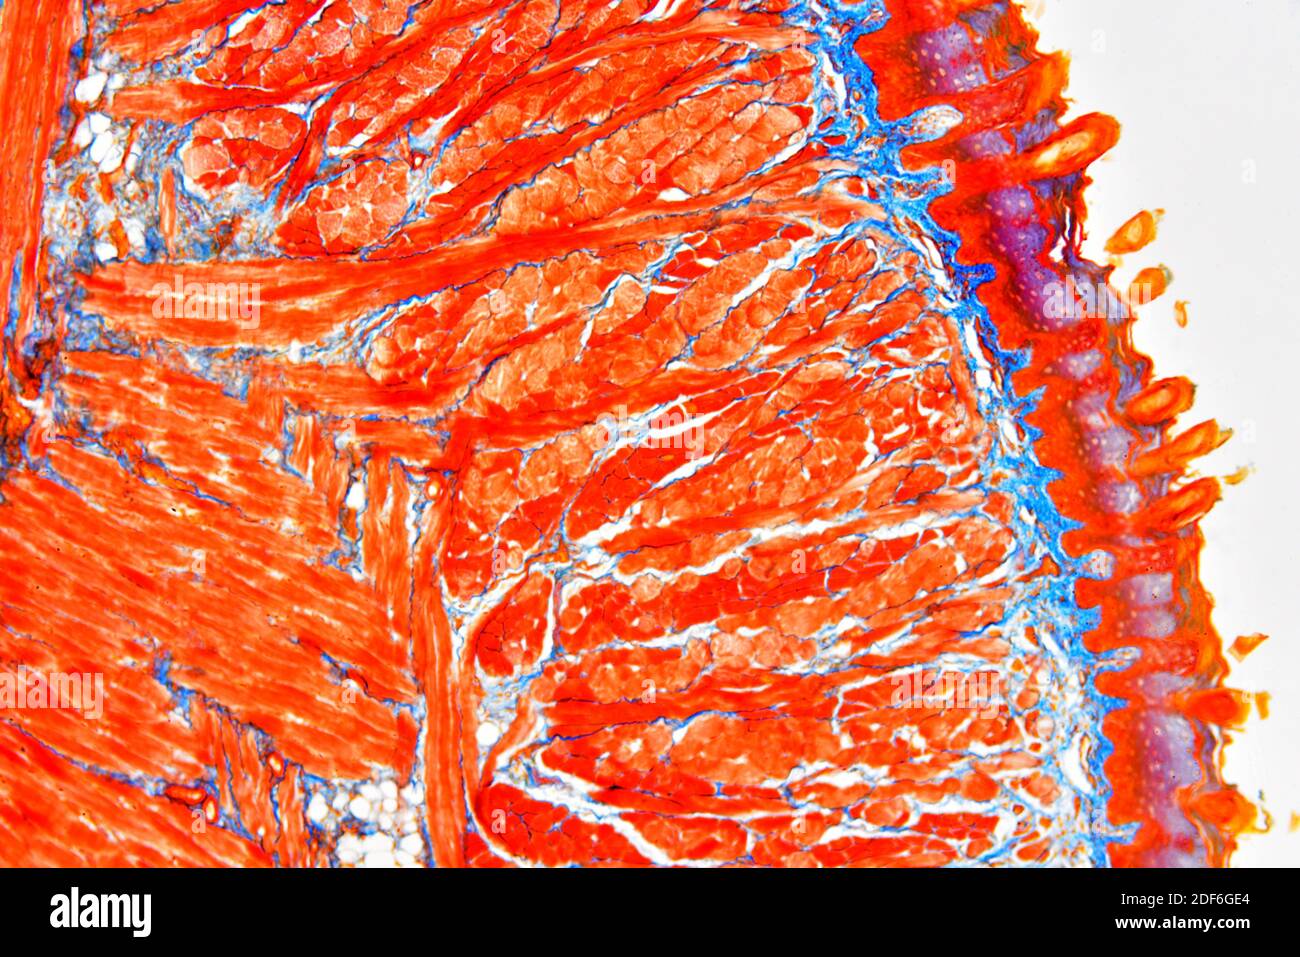 Sezione della lingua che mostra papille linguali, papille gustative, muscoli striati, ghiandole gustative e tessuto connettivo. Microscopio ottico X40. Foto Stock